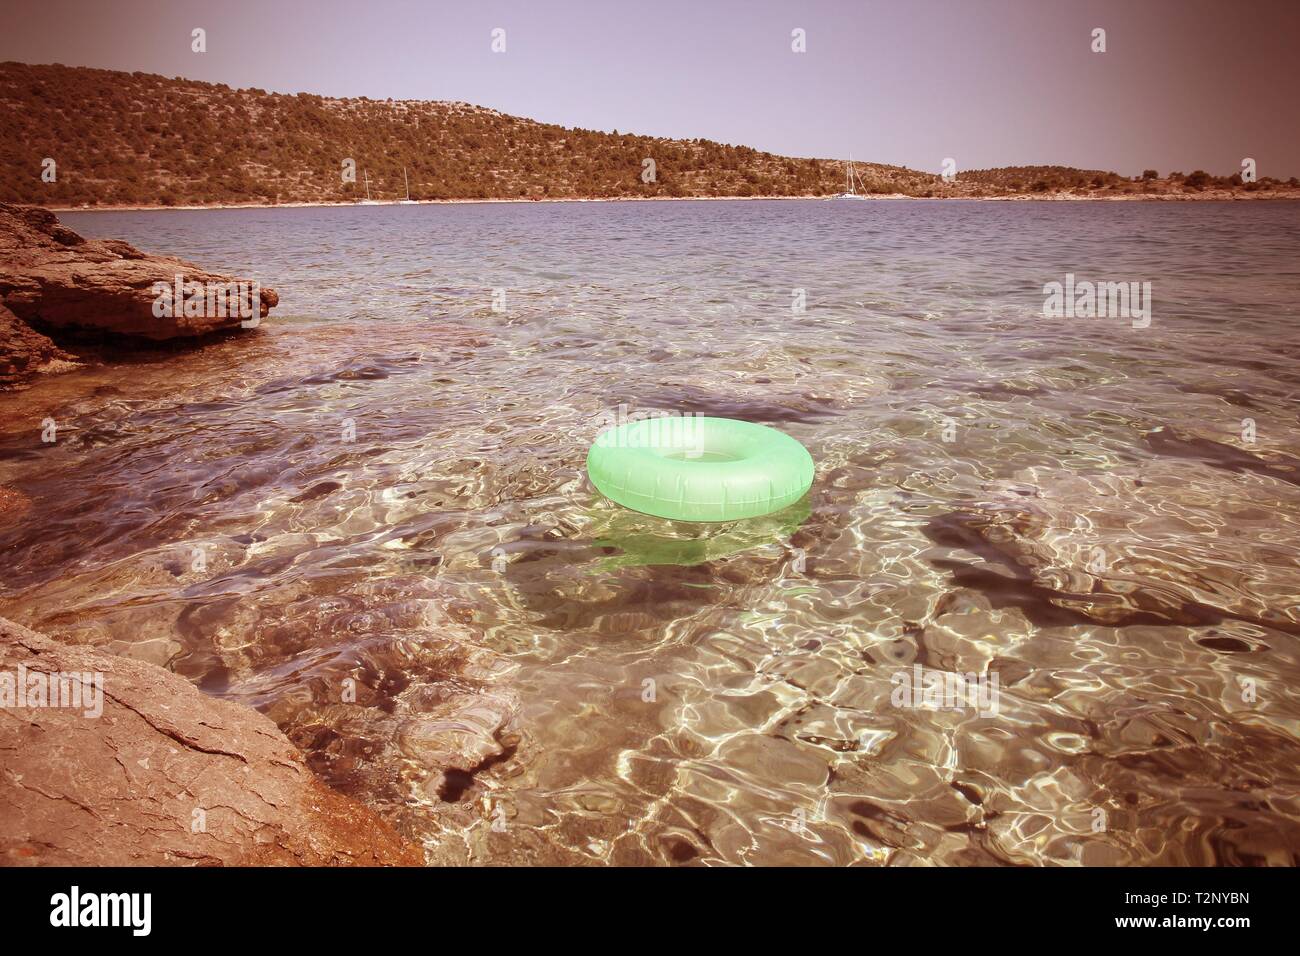 Croatie - paysage de la côte de Dalmatie. Plage de l'île de Murter - Mer Adriatique. Les couleurs traitées - style retro filtered tone. Banque D'Images